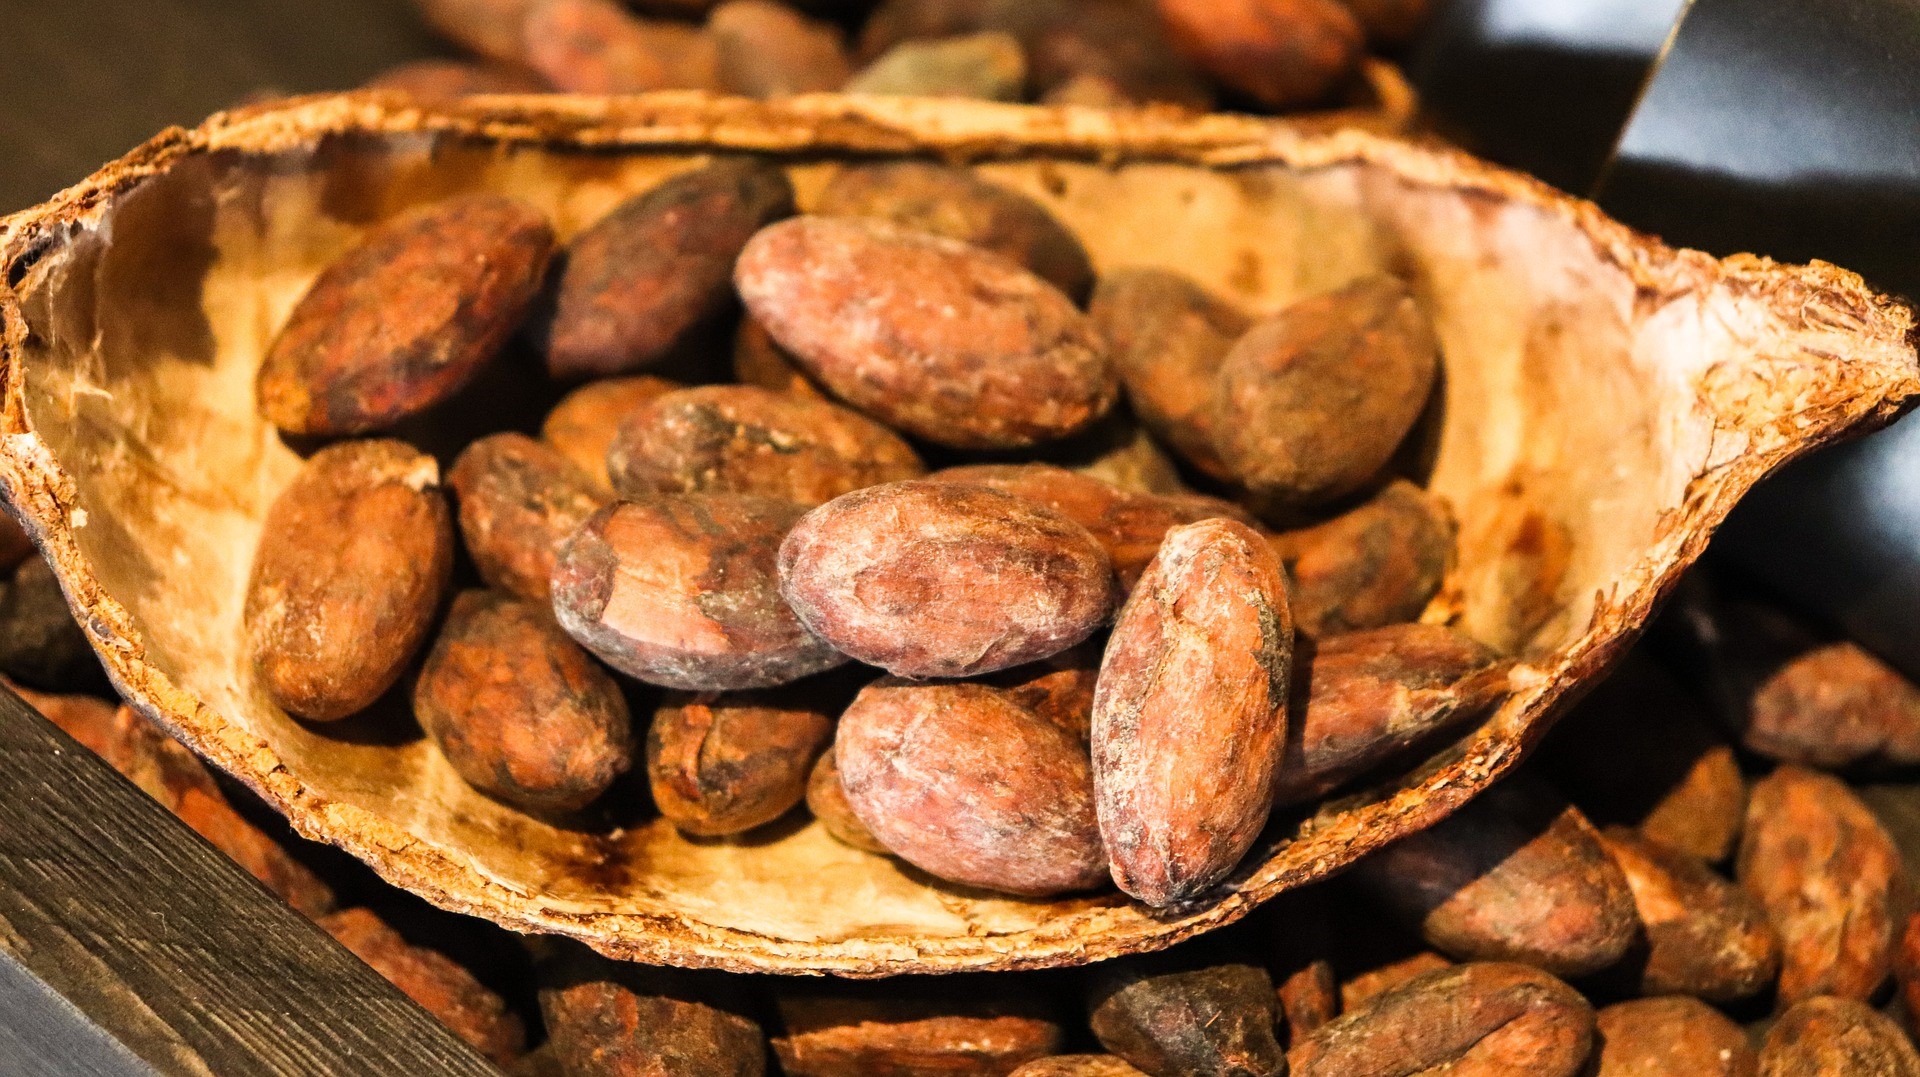 Kakao handlas genom olika finansiella instrument. I den här guiden kommer vi att förklara hur man handlar med kakao på börsen, de olika instrument som handlare har för att spekulera i priset på kakao, inklusive vilka mäklare som erbjuder relaterade terminer, aktier och derivat.